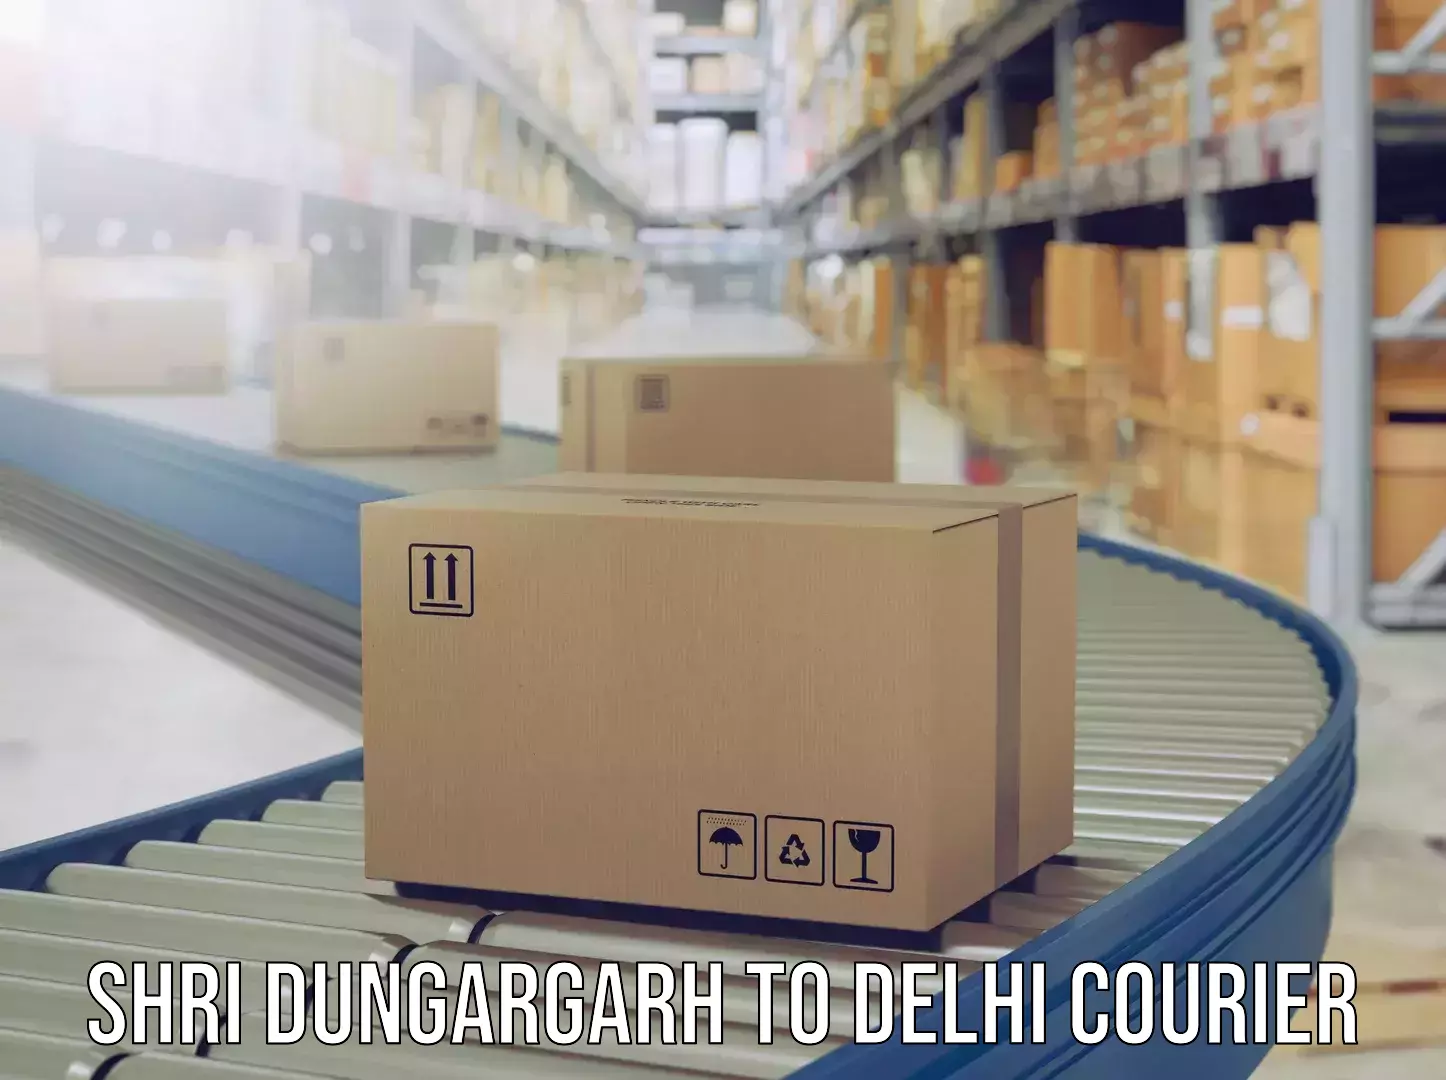 Door-to-door baggage service Shri Dungargarh to Delhi